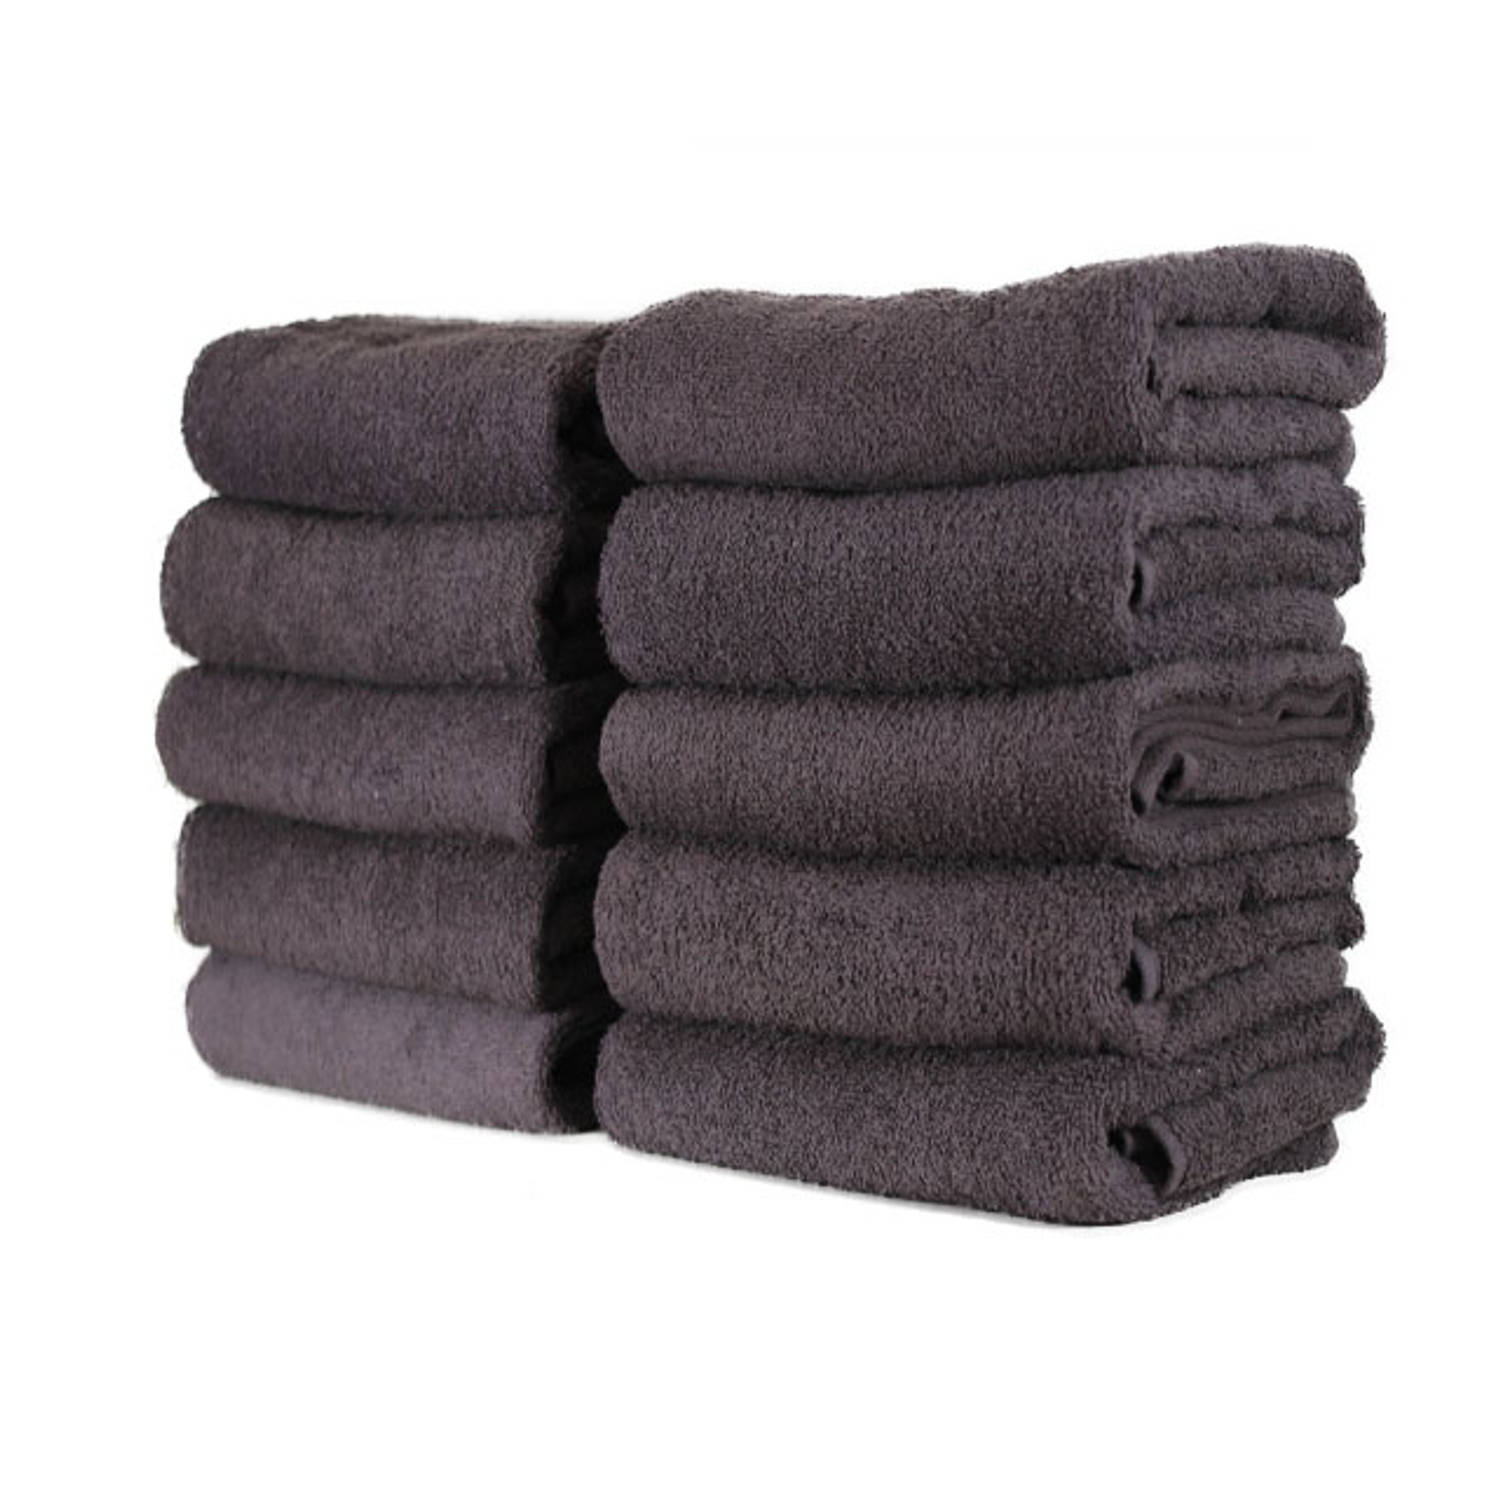 De kamer schoonmaken jurk broeden Hotel handdoek - set van 6 stuks - 70x140 cm - Antraciet | Blokker